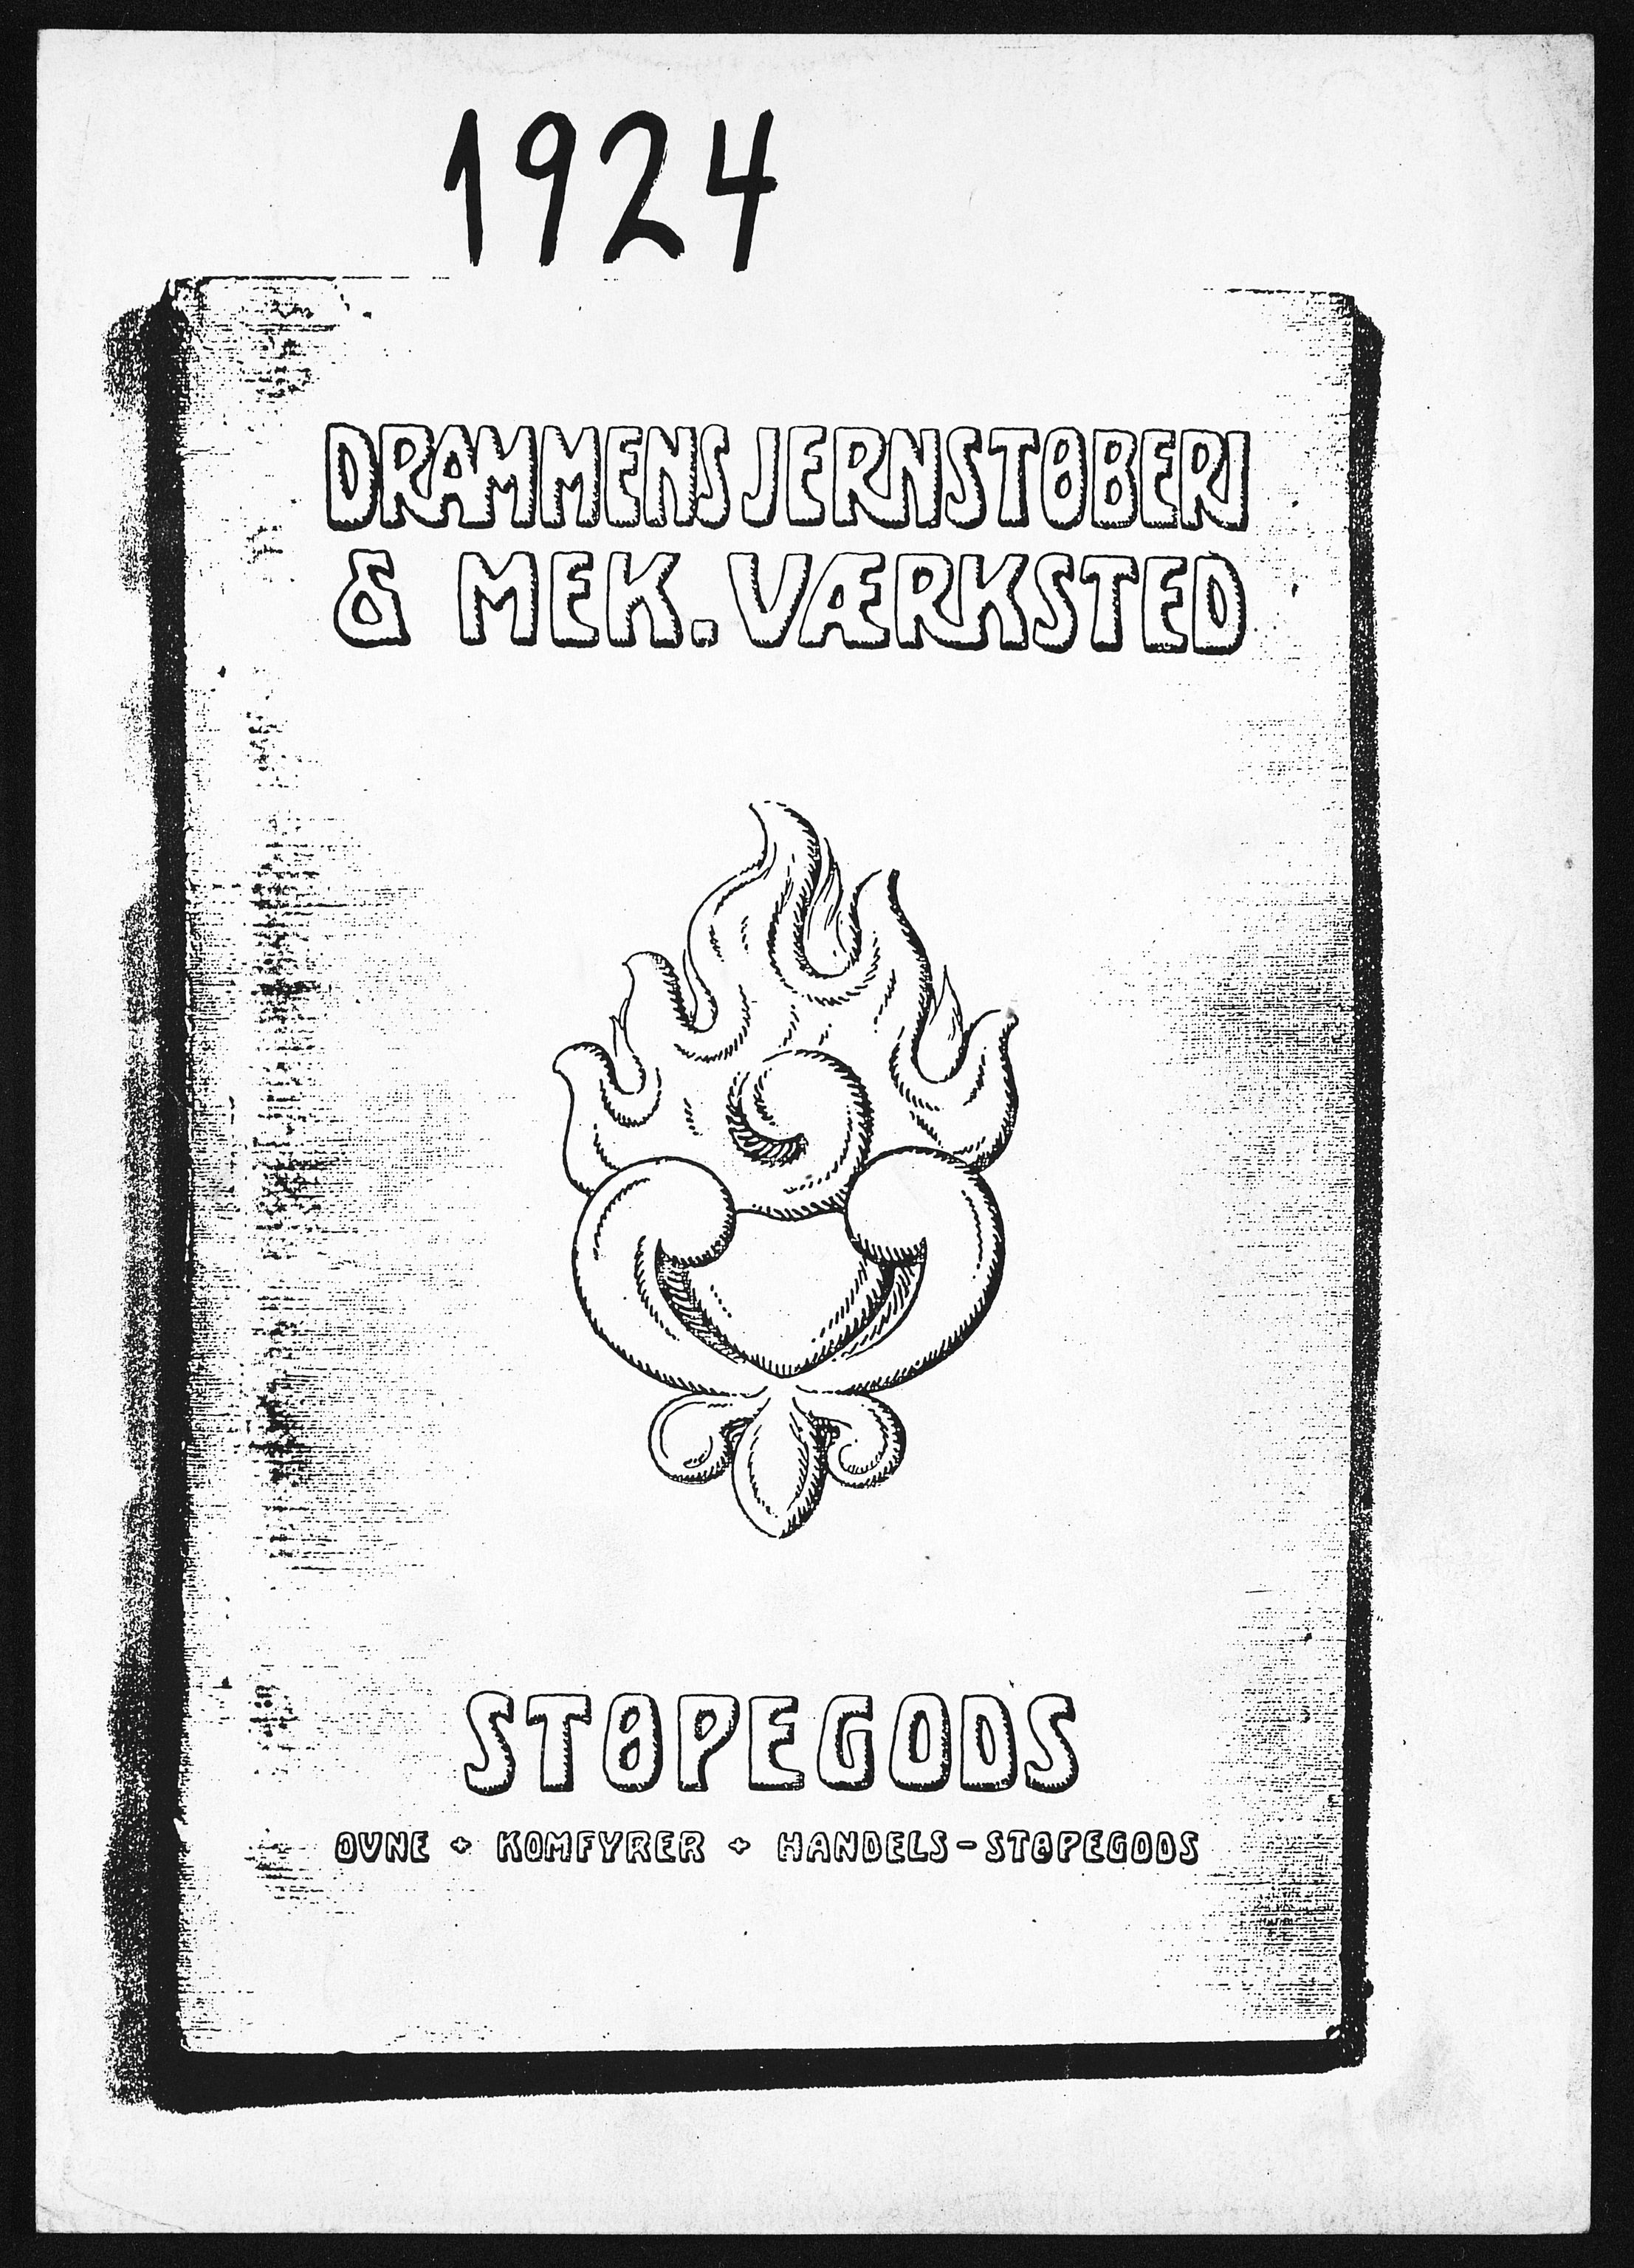 Næs Jernverksmuseets samling av historiske ovnskataloger, NESJ/NJM-006/01/L0048: Drammens Jernstøberi & Mek. Værksted, Støbegods, Ovne, Komfyrer, Handels-Støpegods, 1924, 1924